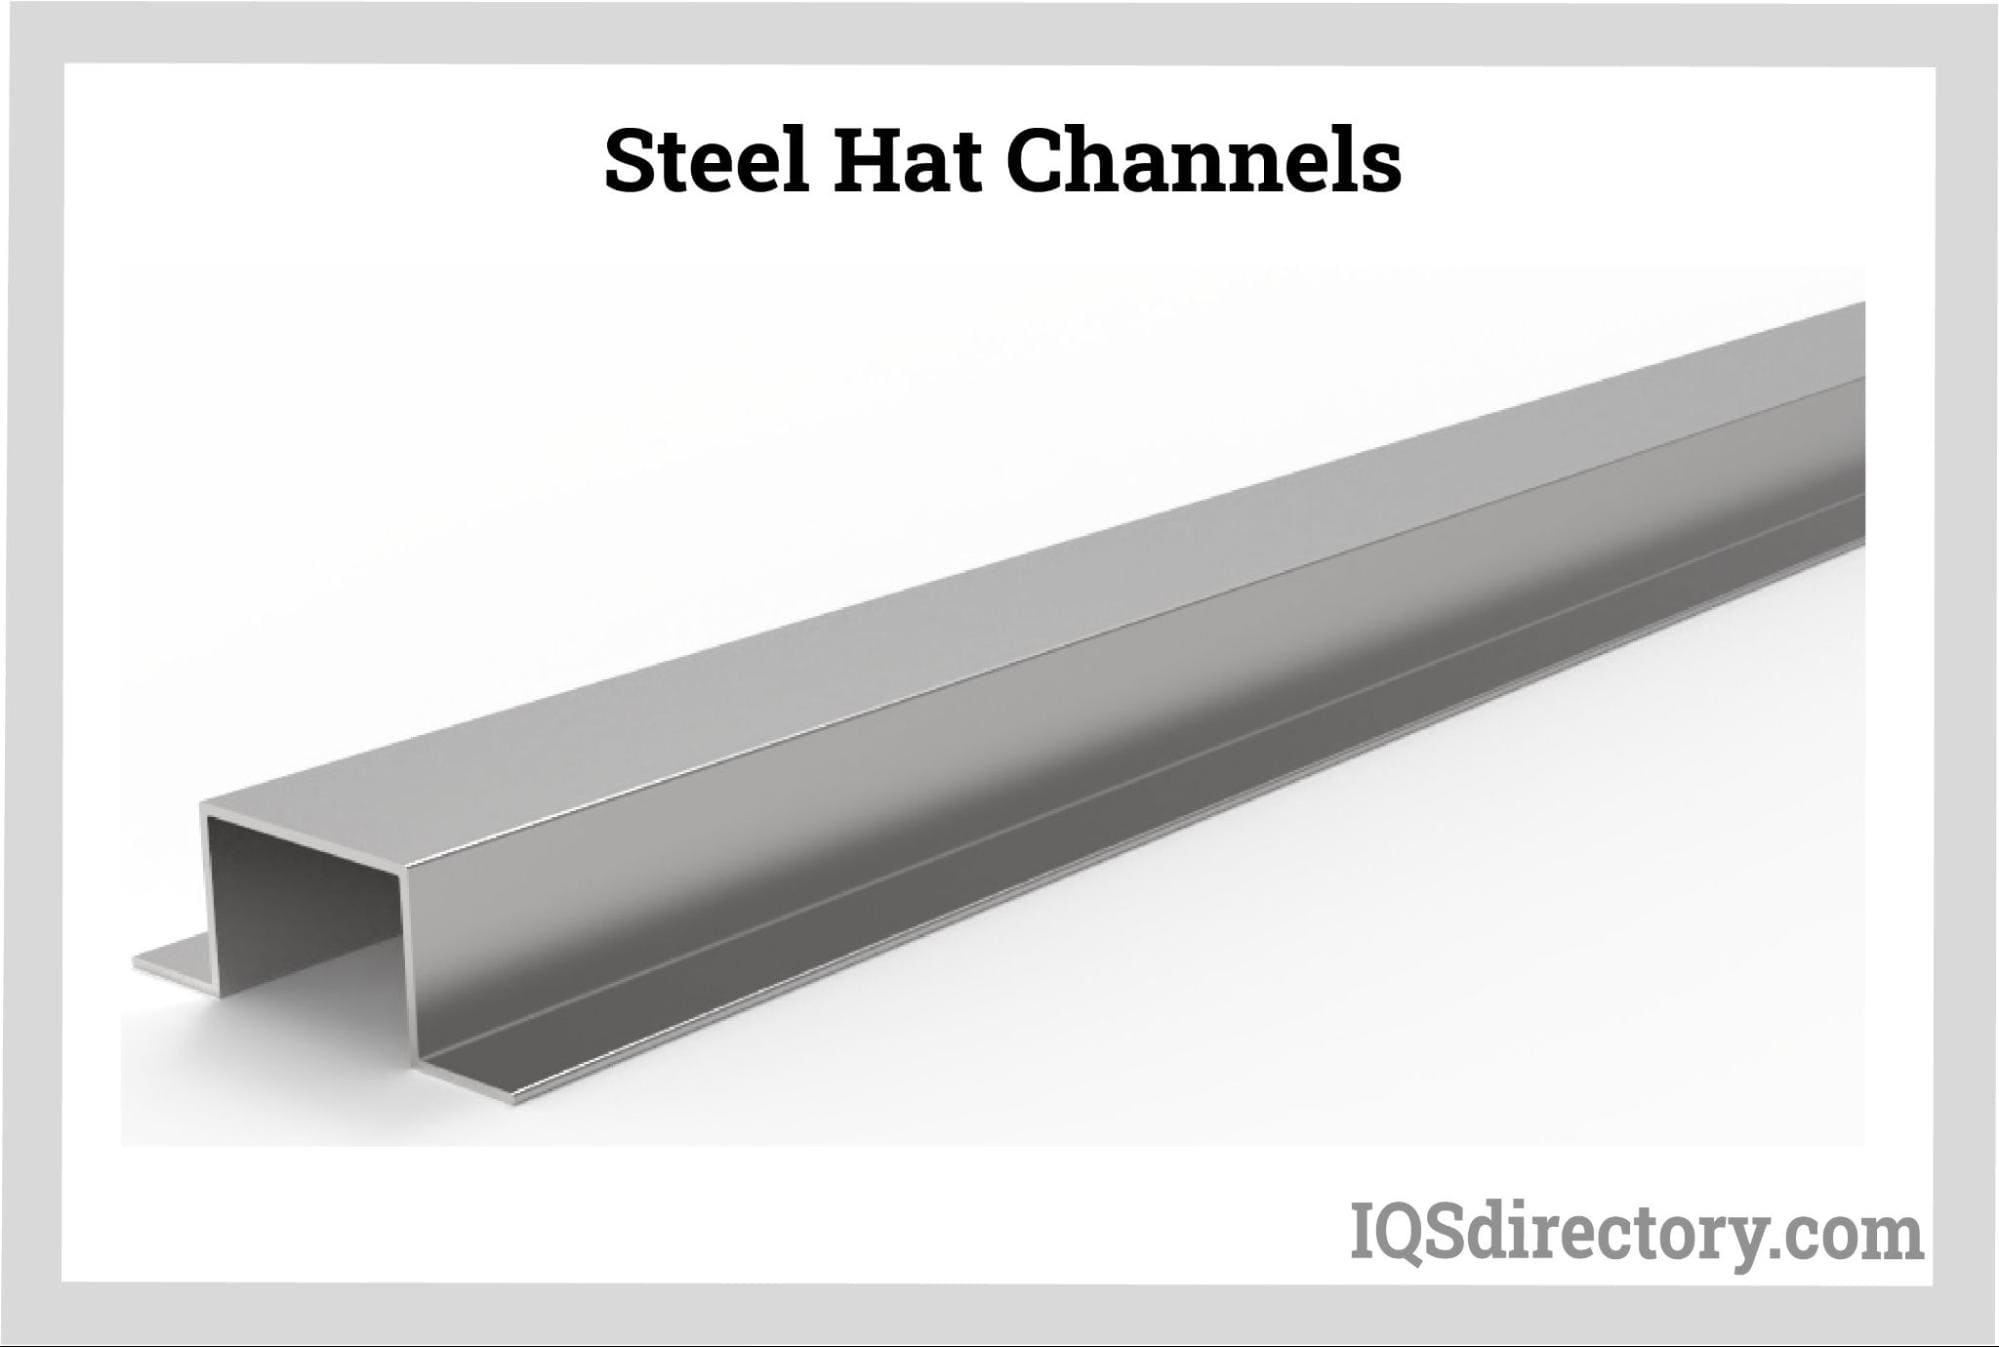 Steel Hat Channels